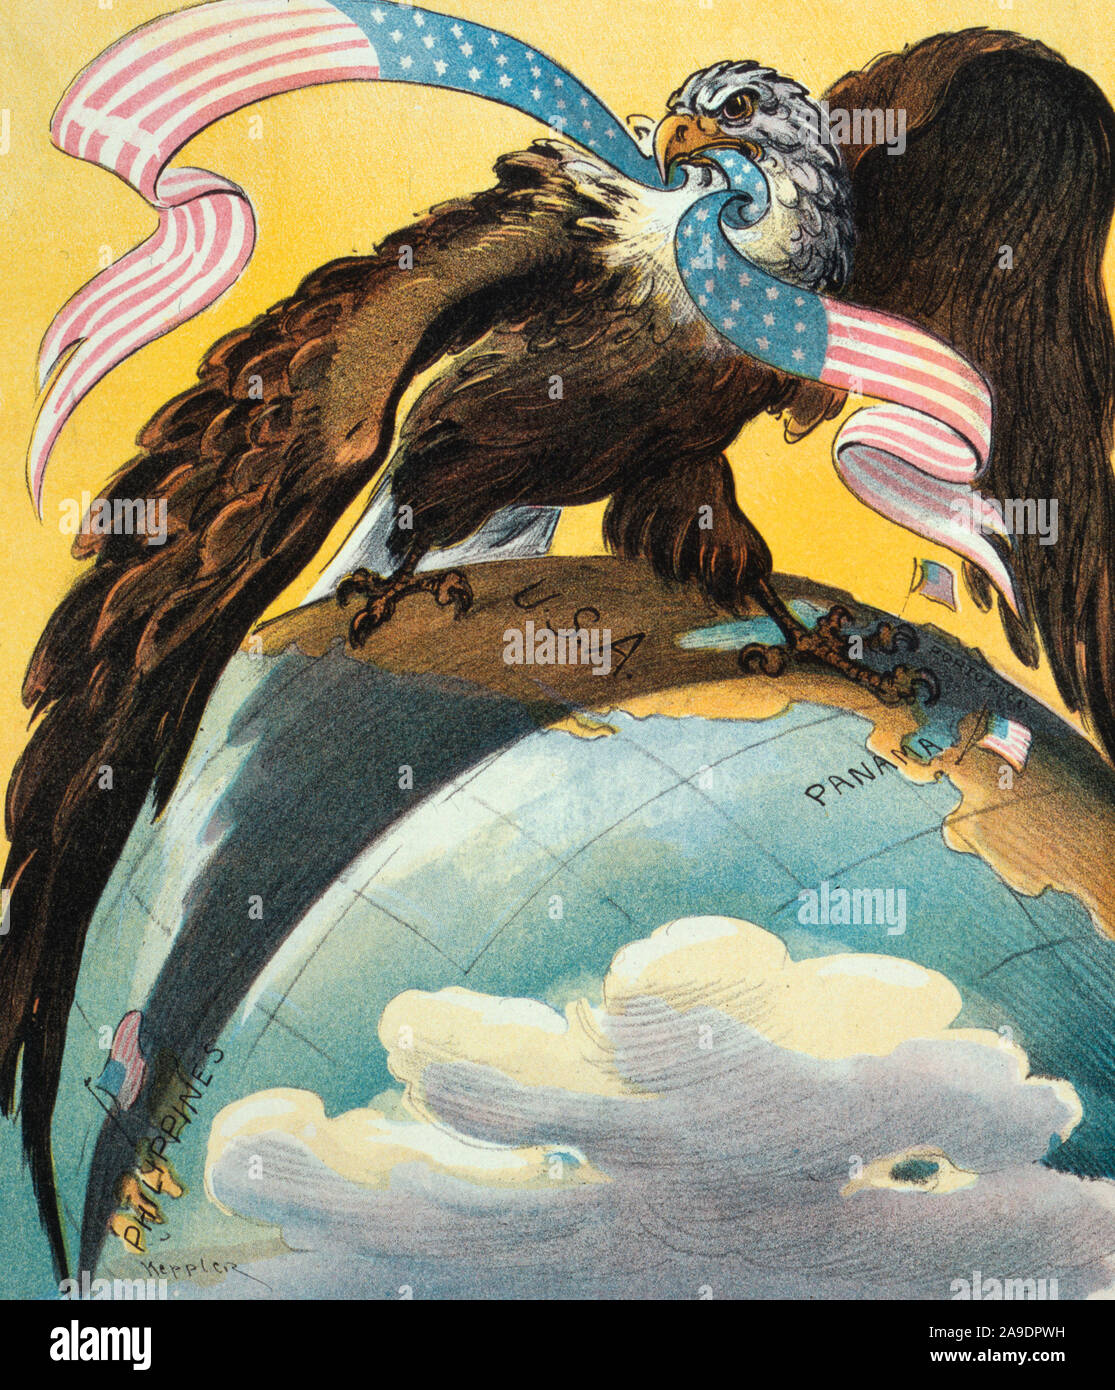 Son 128e anniversaire "Gee, mais c'est un tronçon !' American Eagle debout sur le monde--un pied en Amérique, l'autre en Amérique centrale. Caricature politique, 1904 Banque D'Images